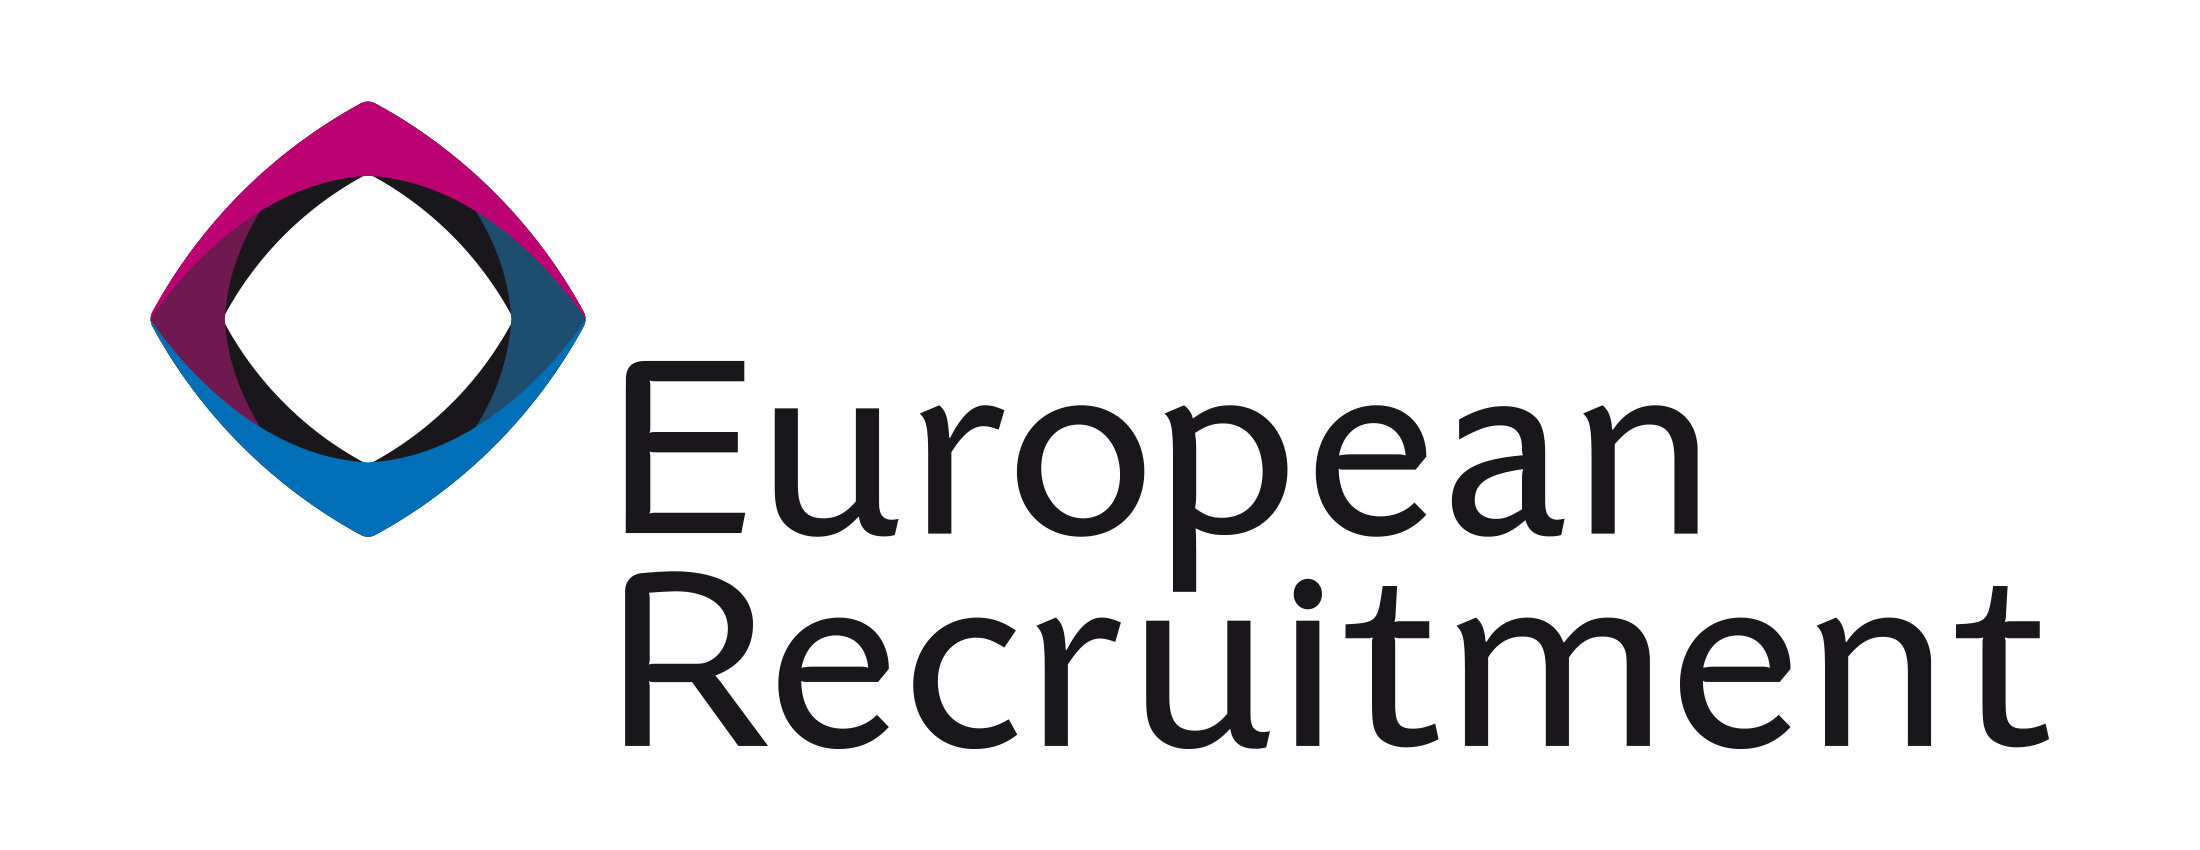 European Recruitment Logo.jpg